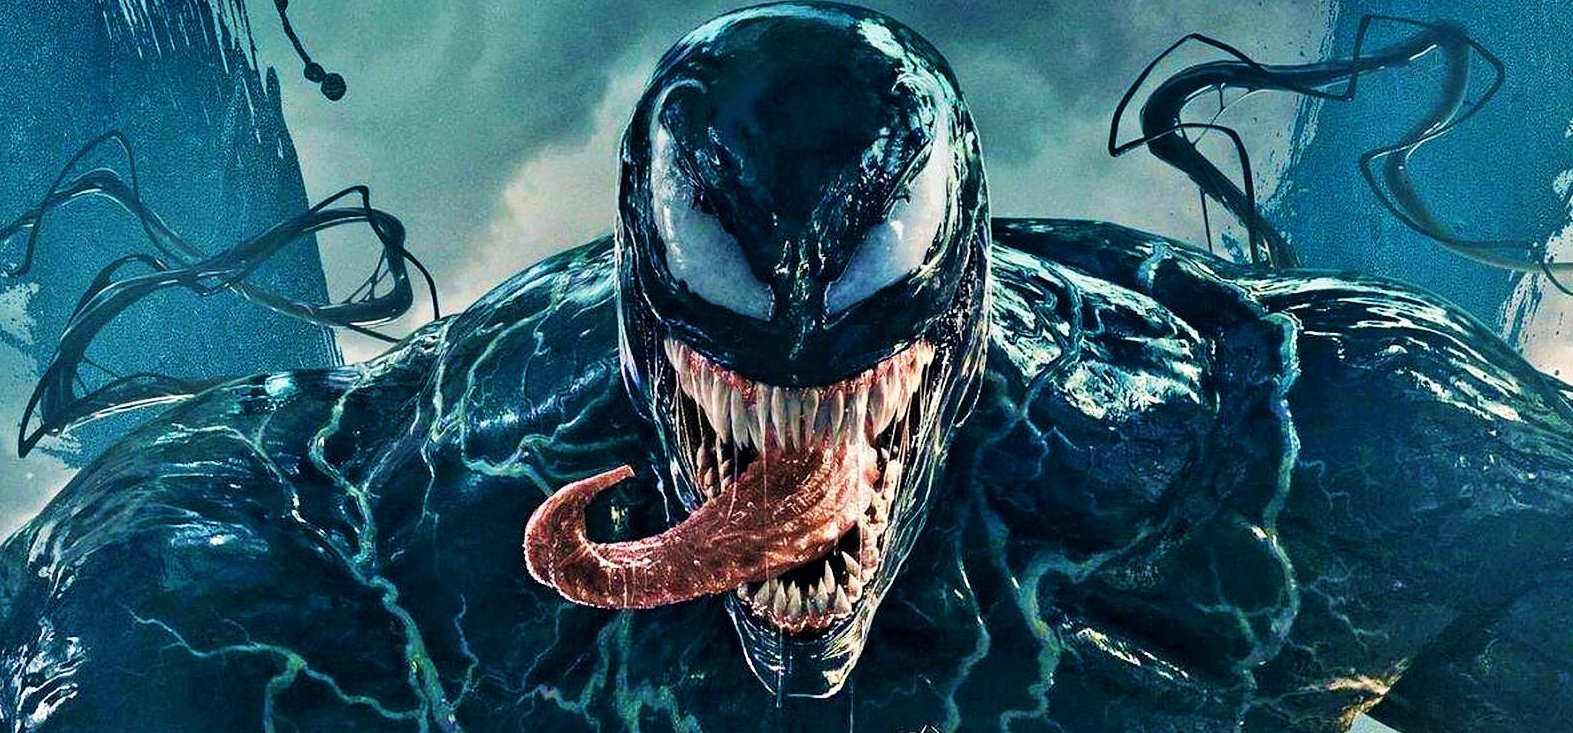 Nincs még kizárva, hogy korhatáros lesz a Venom 2